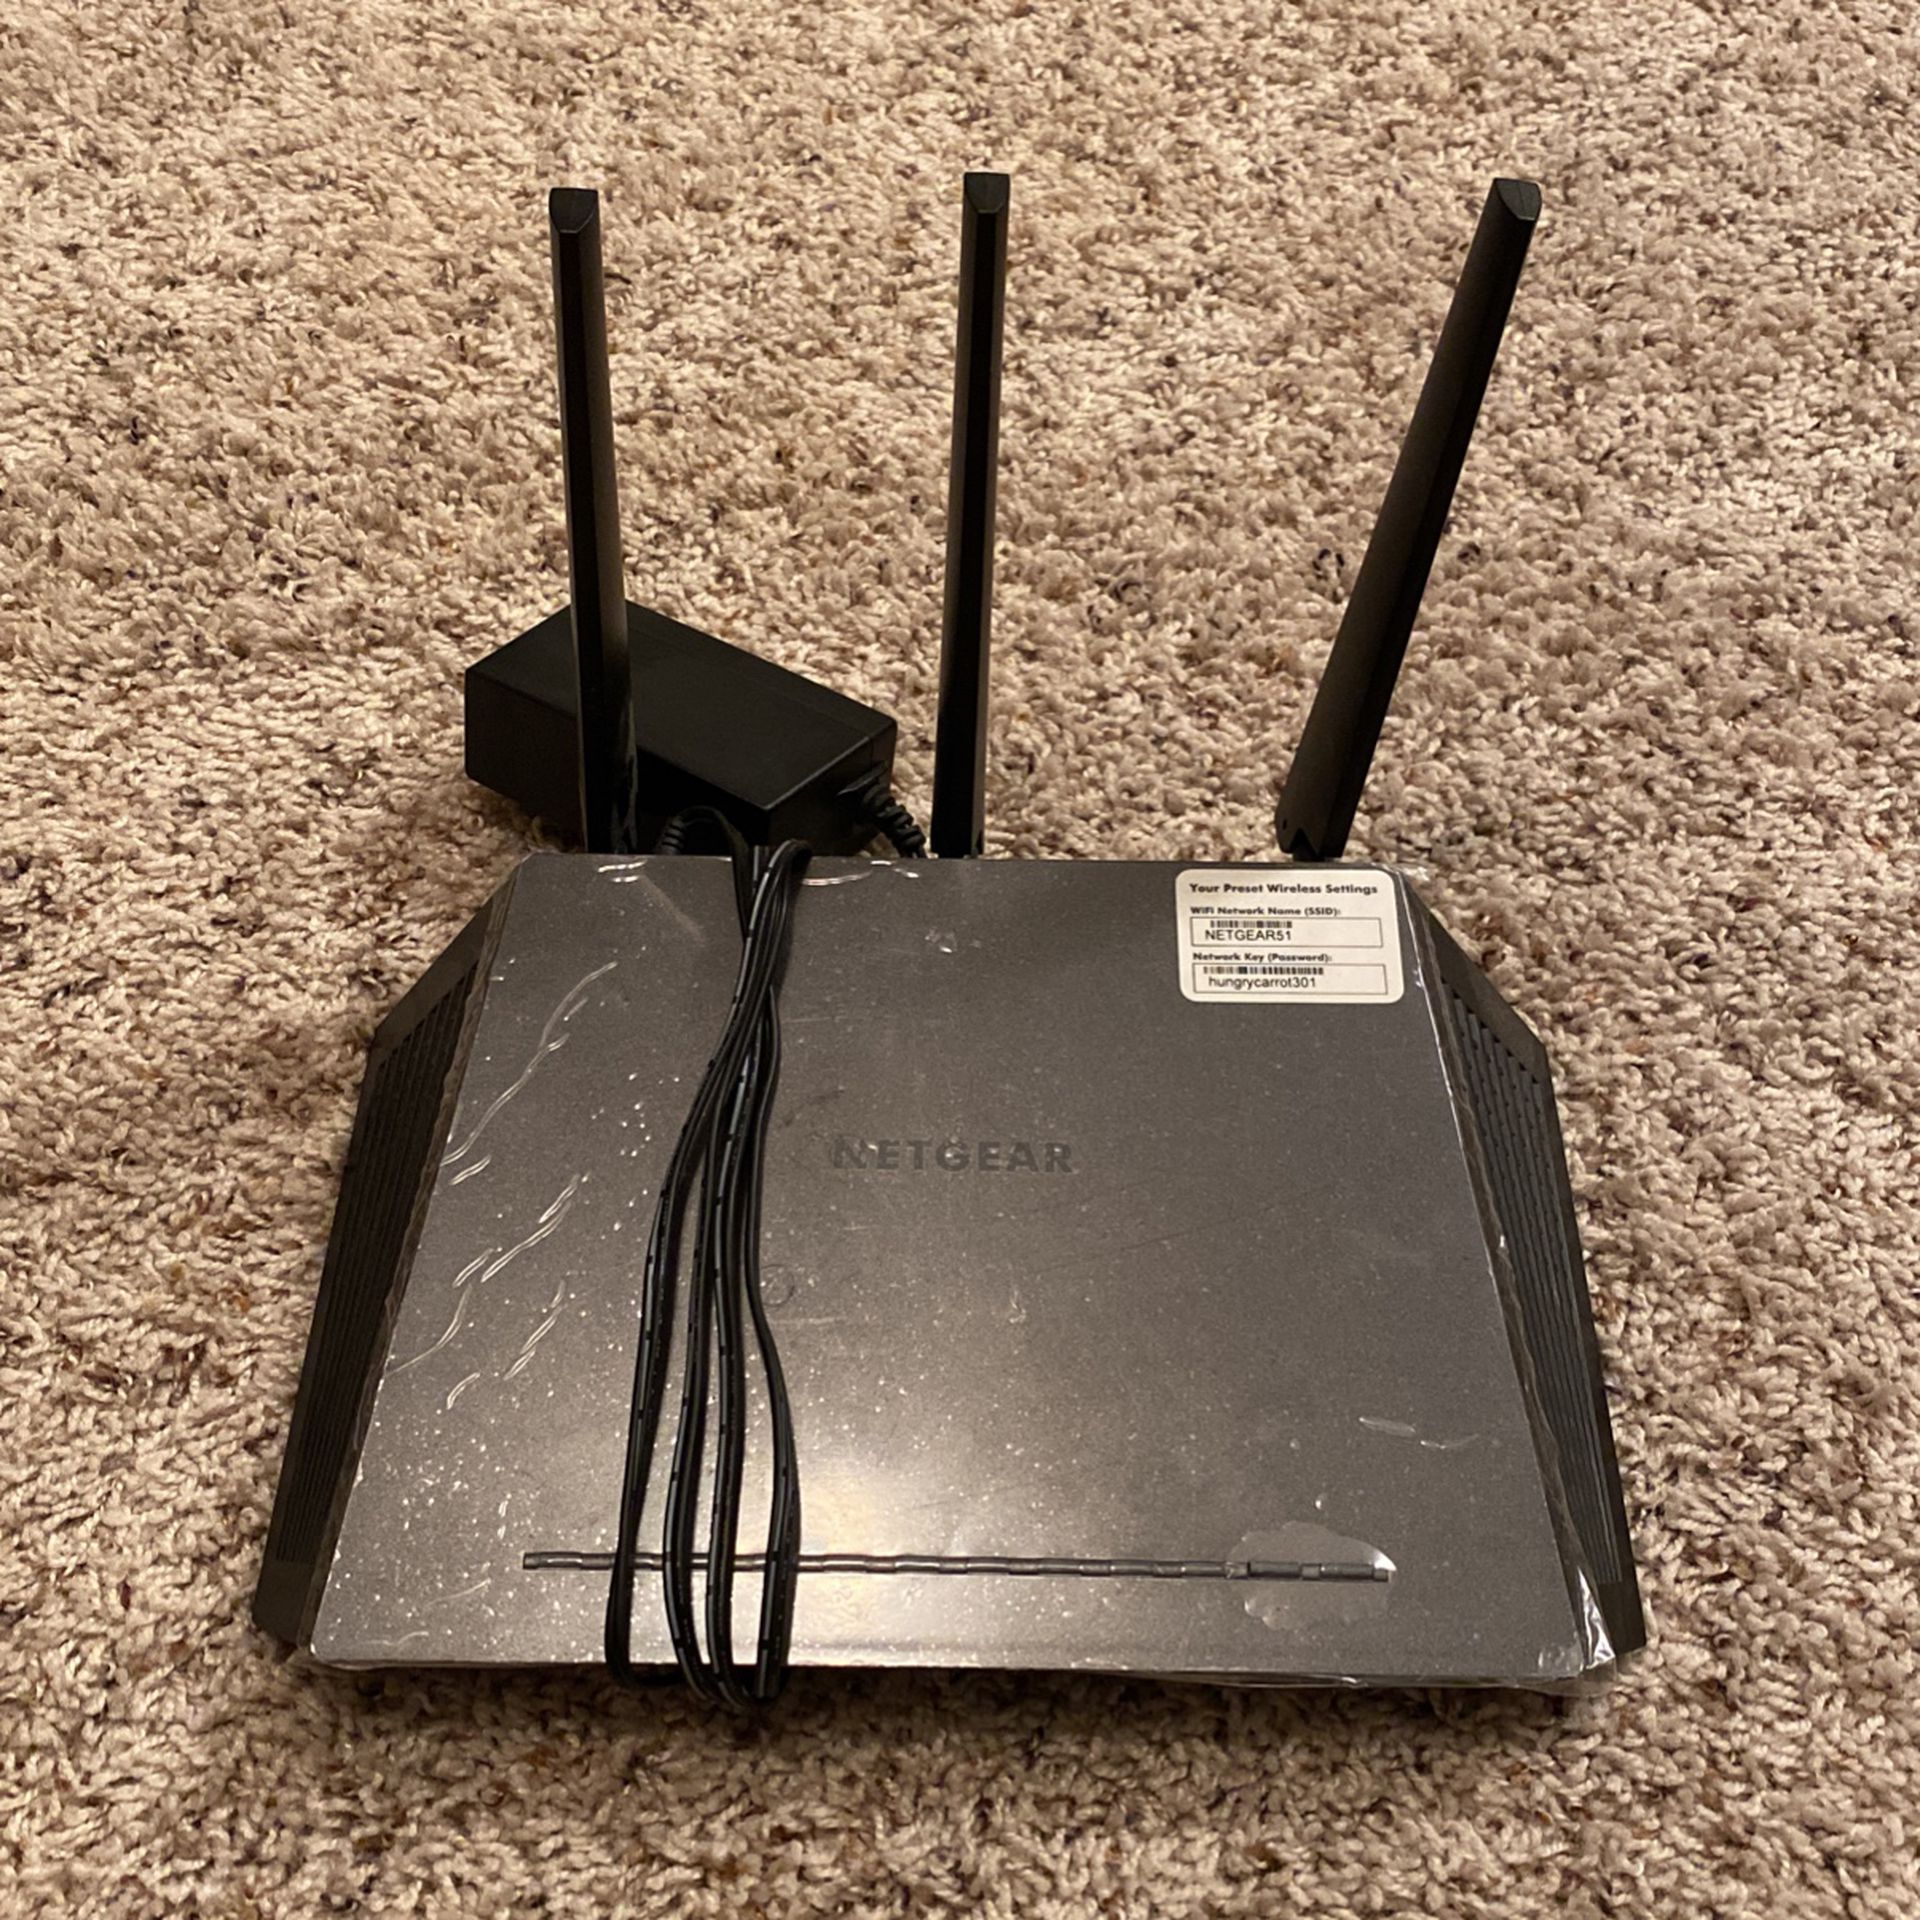 NETGEAR router 